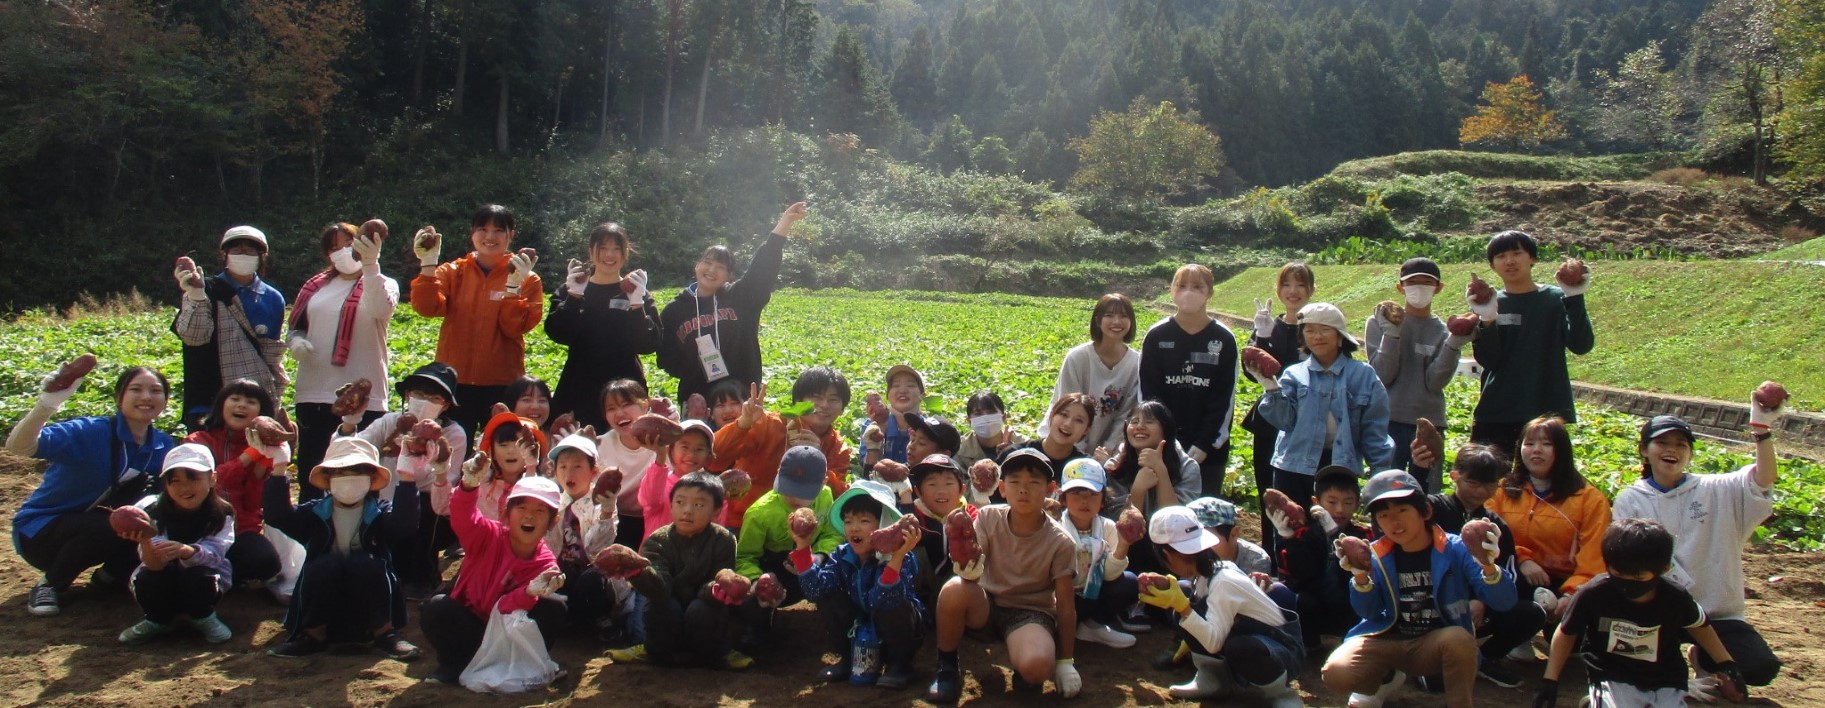 青少年野外活動センターは子どもたちの挑戦や冒険を応援しています。